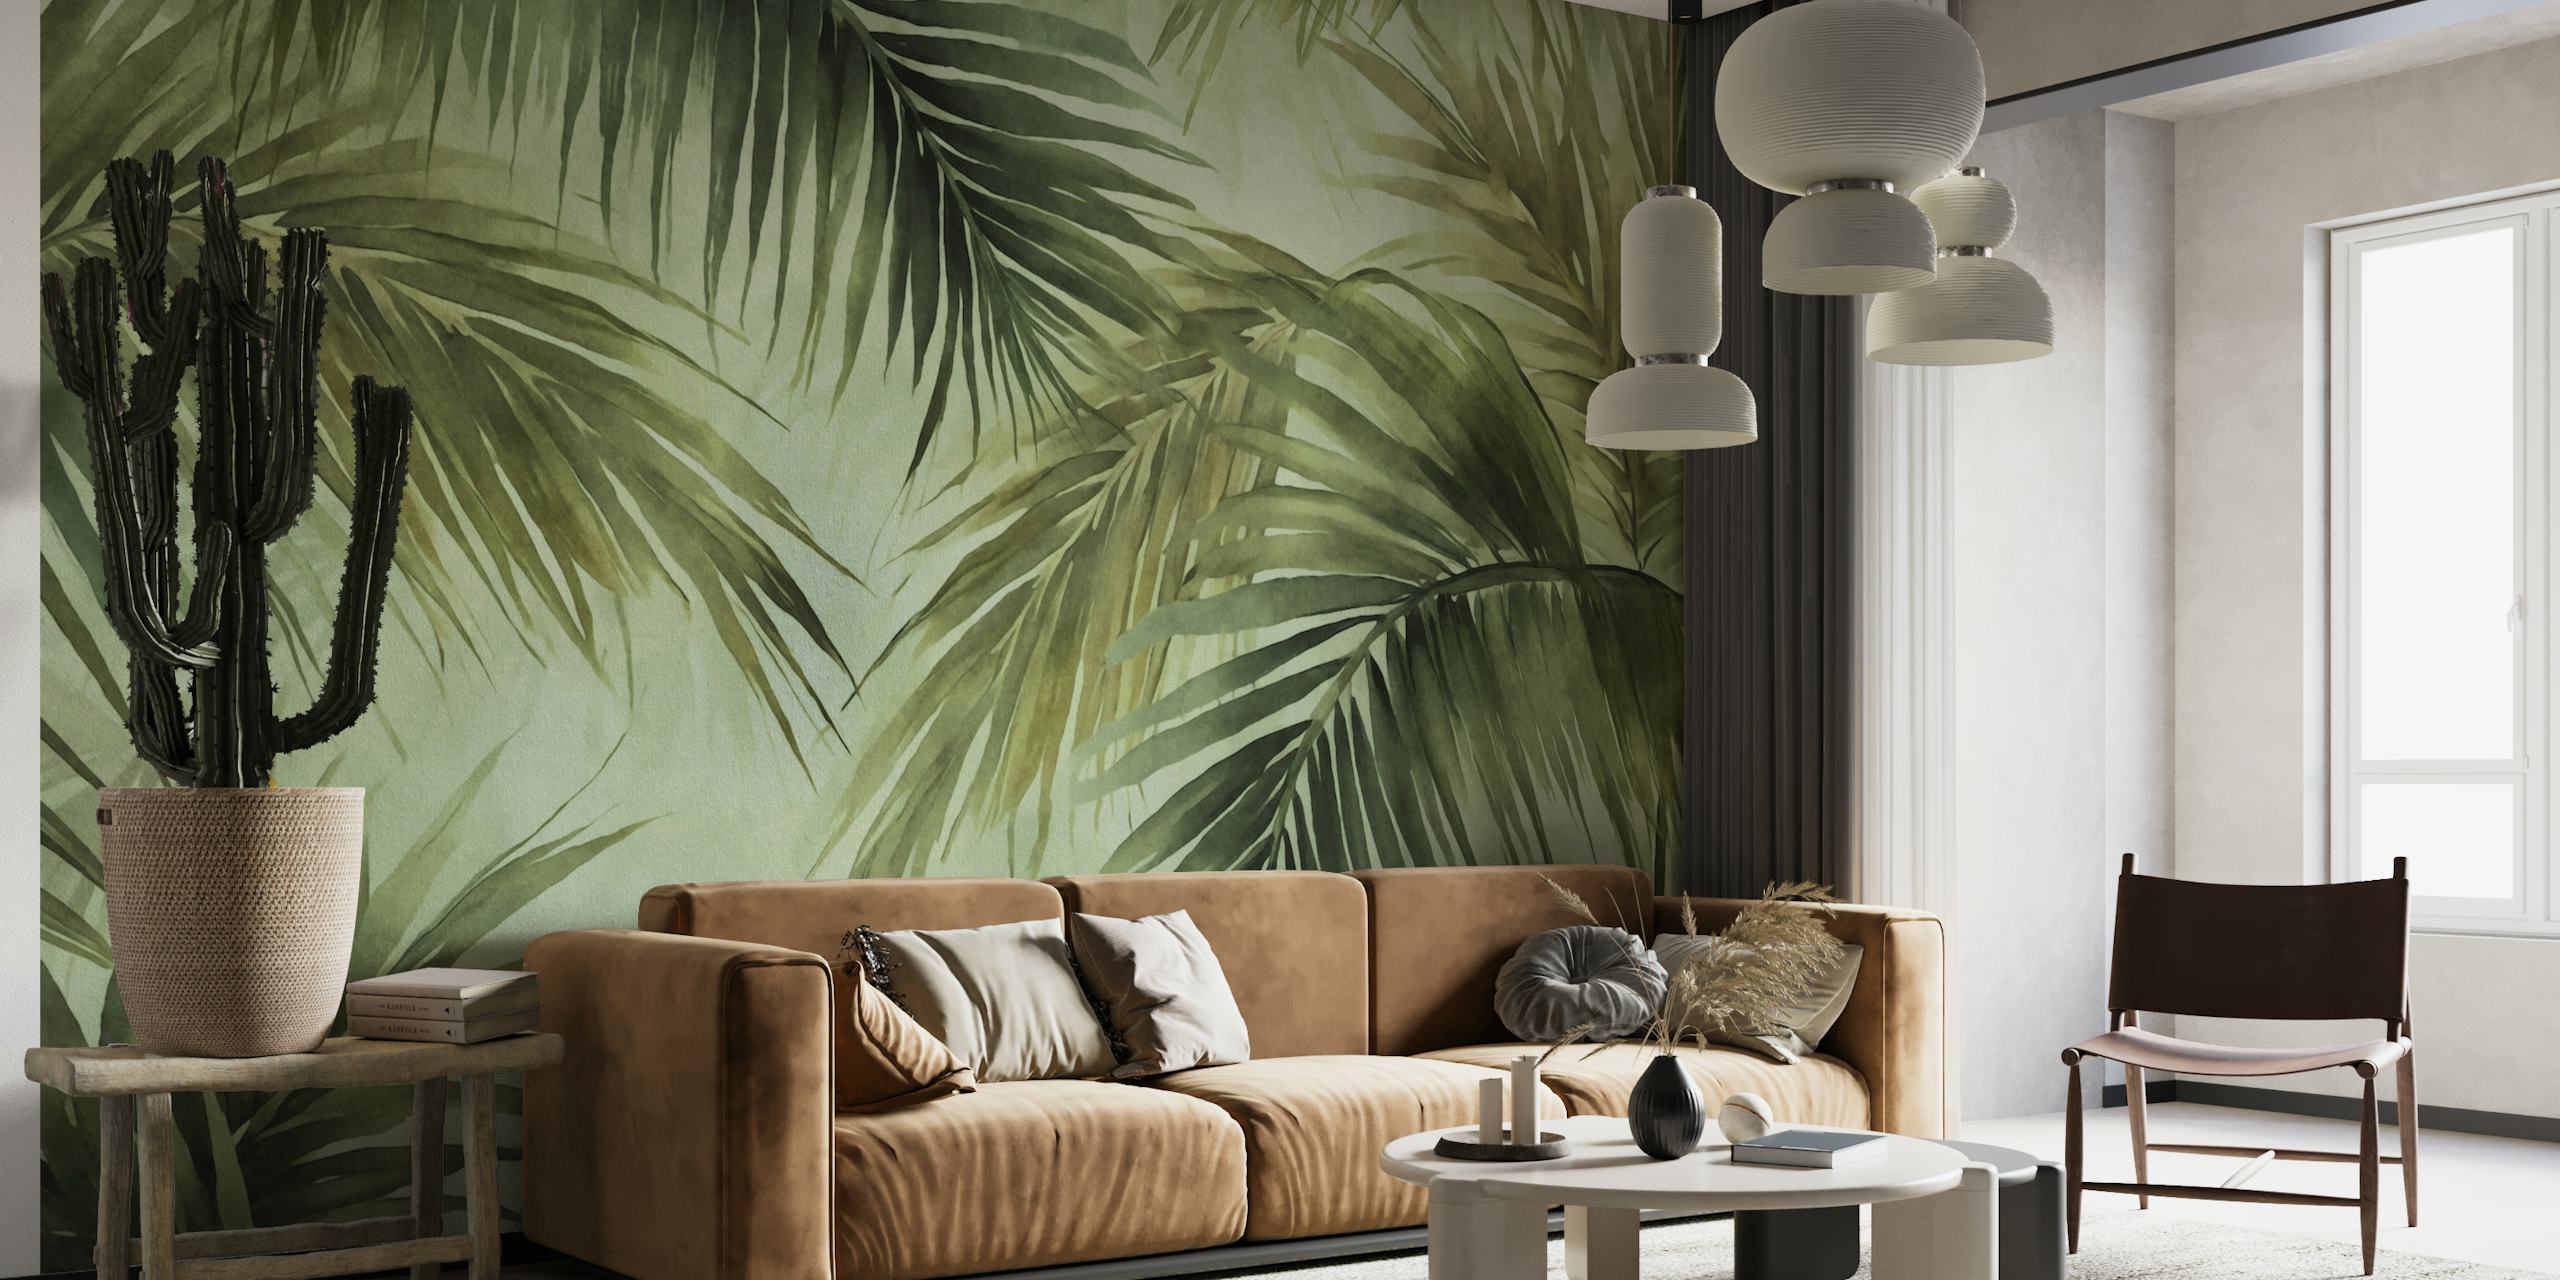 Aquarel palmblad muurschildering in stemmige tinten, perfect voor het creëren van een tropische eilandsfeer.